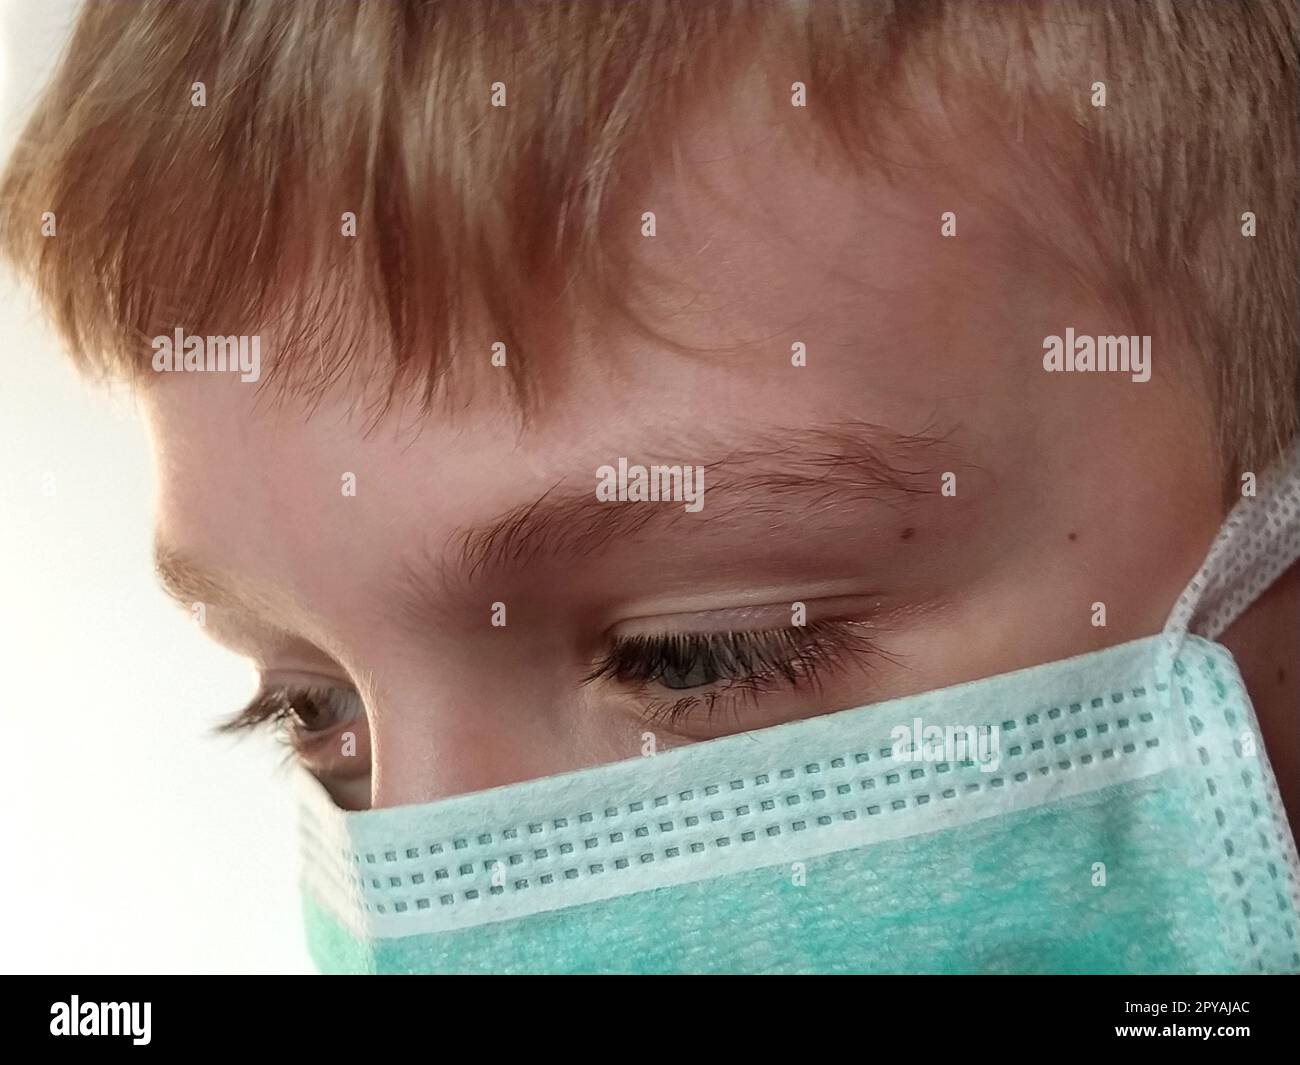 Maskiertes Kind. Das Gesicht eines 7-jährigen Jungen in einer schützenden Operationsmaske. Schuljunge mit blonden Haaren und blaugrauen Augen auf weißem Hintergrund Stockfoto